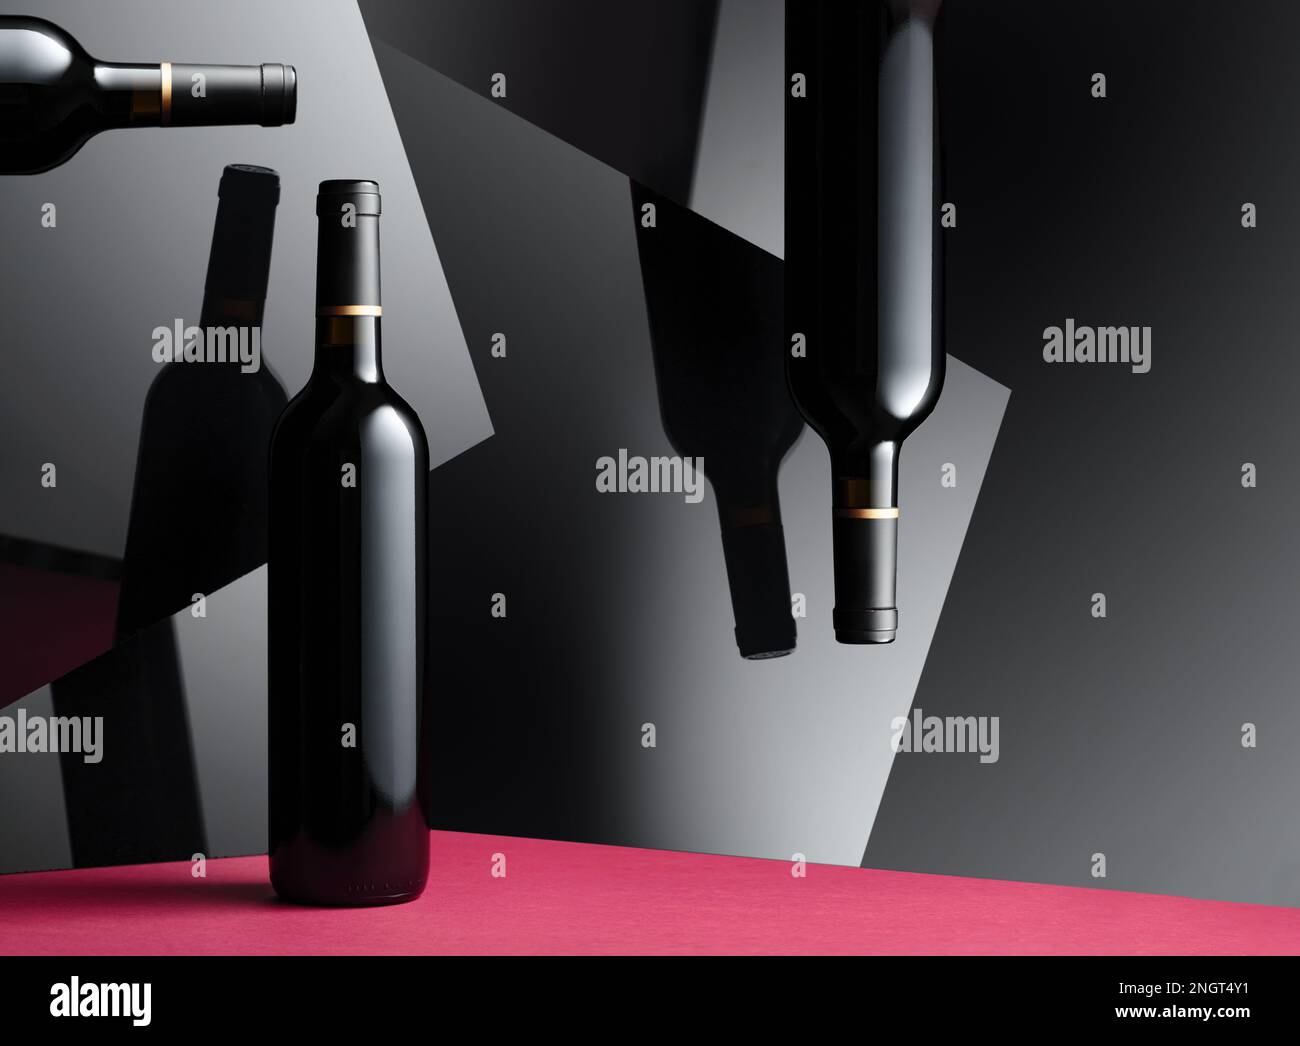 Flaschen Rotwein mit Reflexion auf den glänzenden schwarzen Oberflächen. Konzept des Themas "teurer Wein". Stockfoto